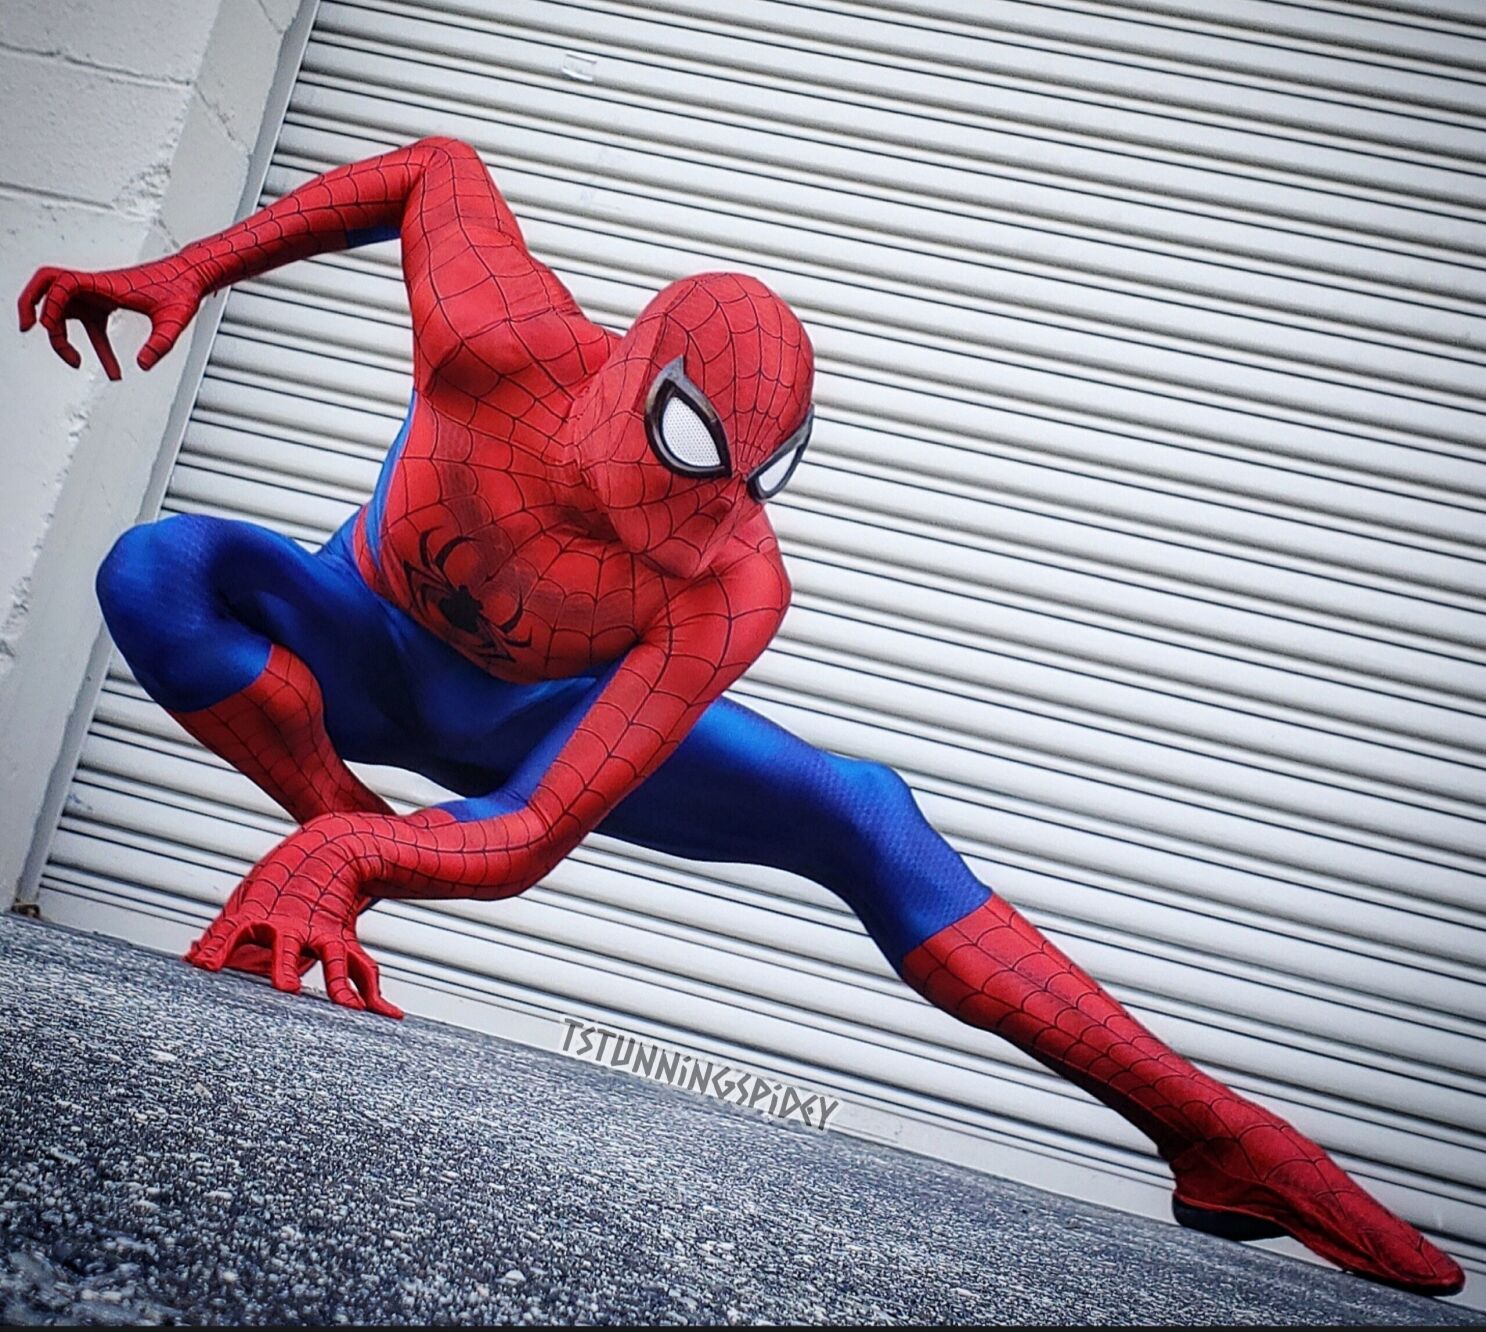 Spider-Man cumple 60 años con un atractivo diverso - Los Angeles Times